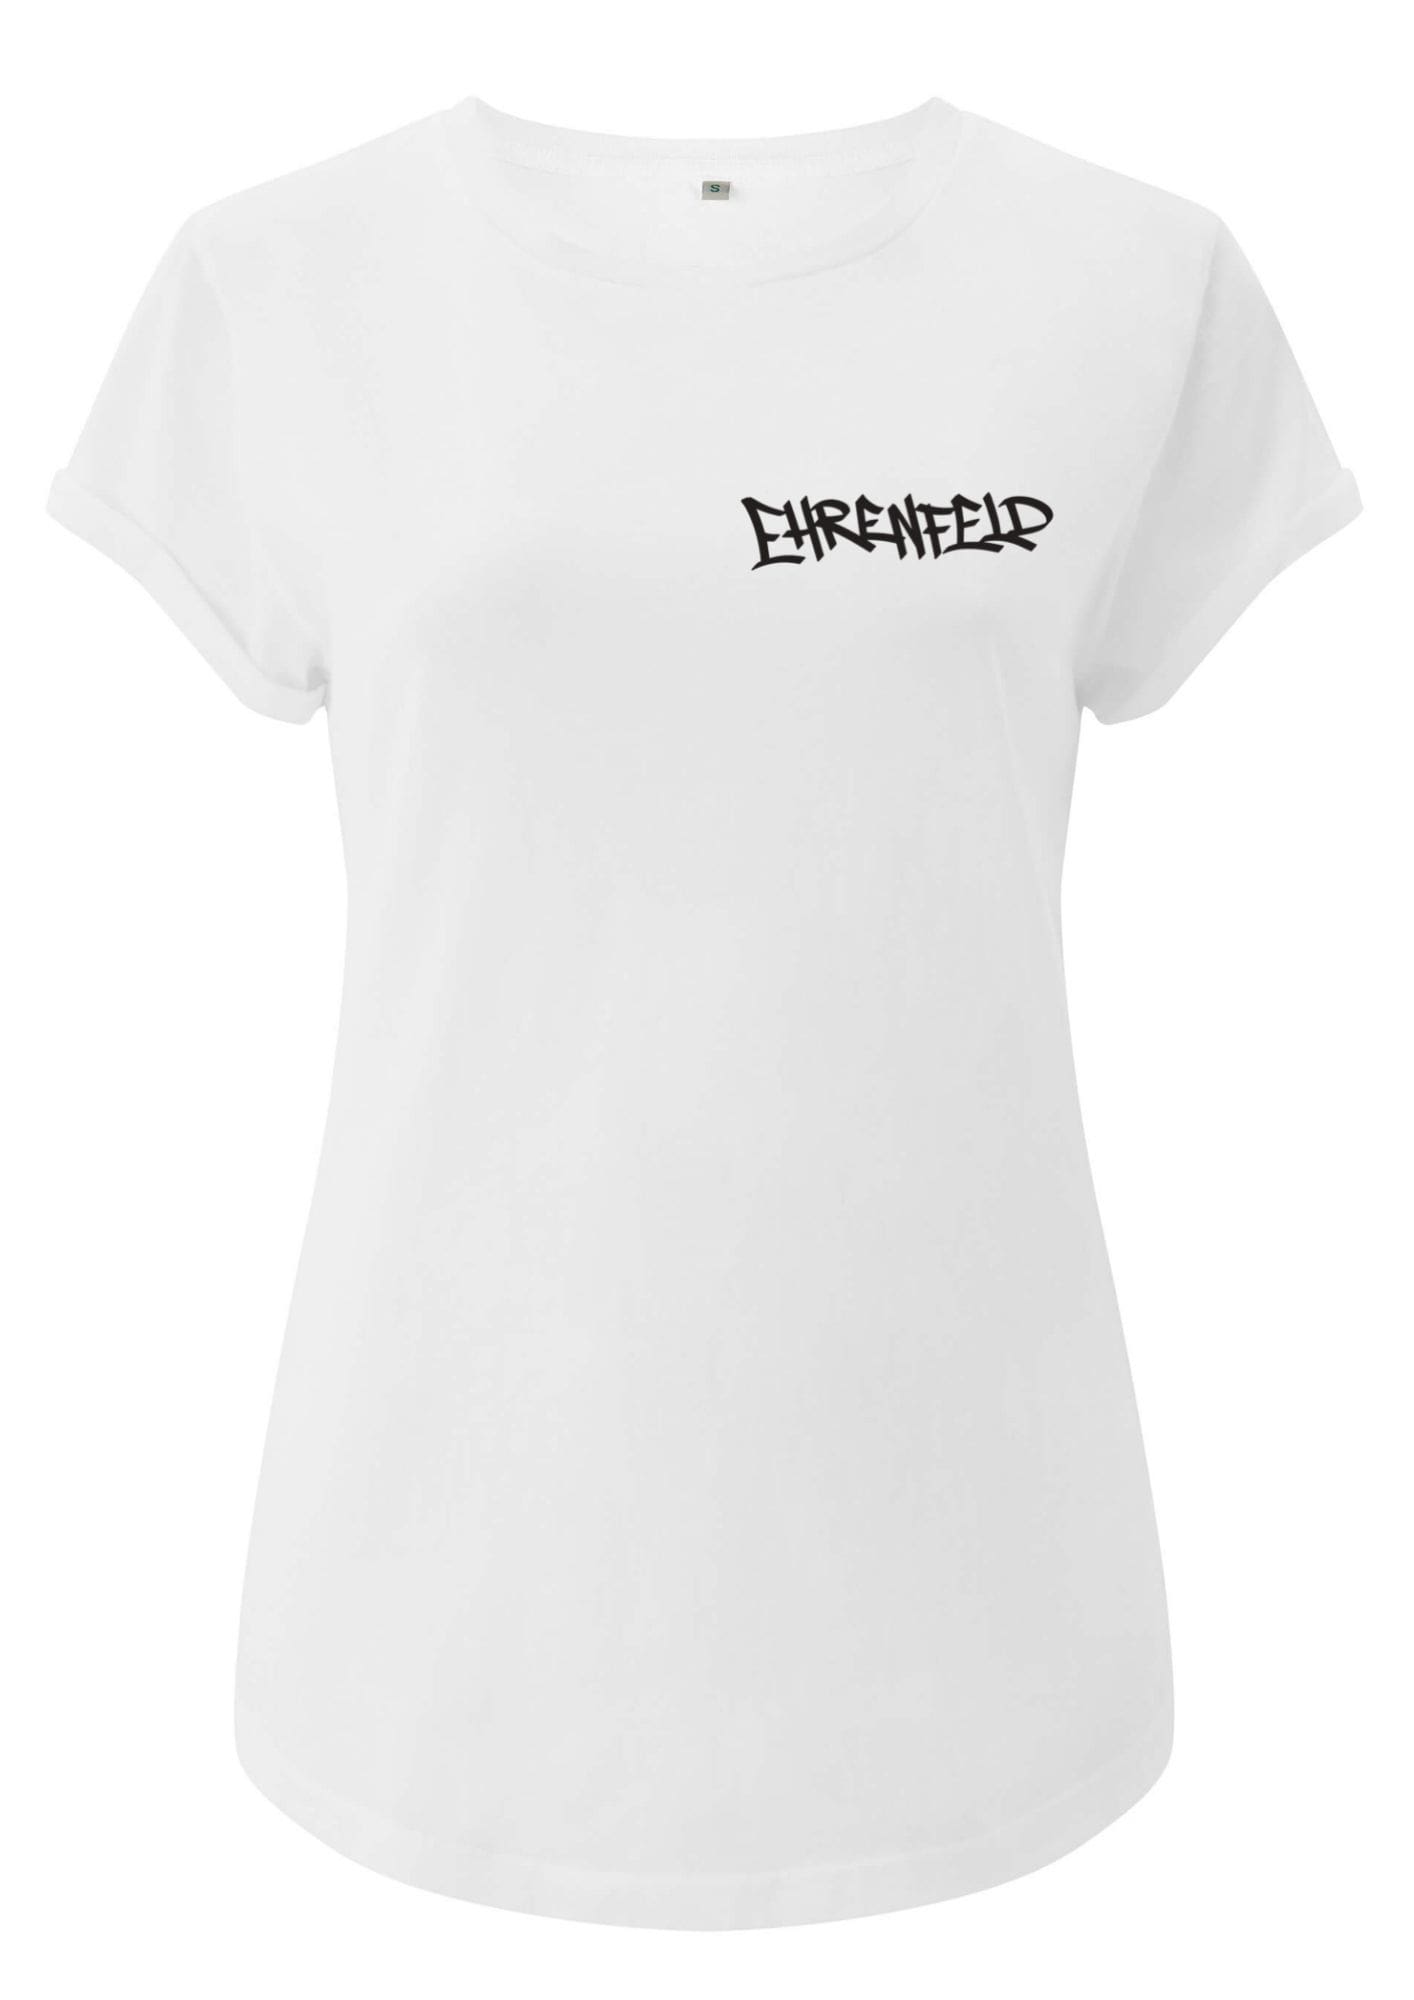 Köln Ehrenfeld T Shirt Frauen Weiß Schwarz